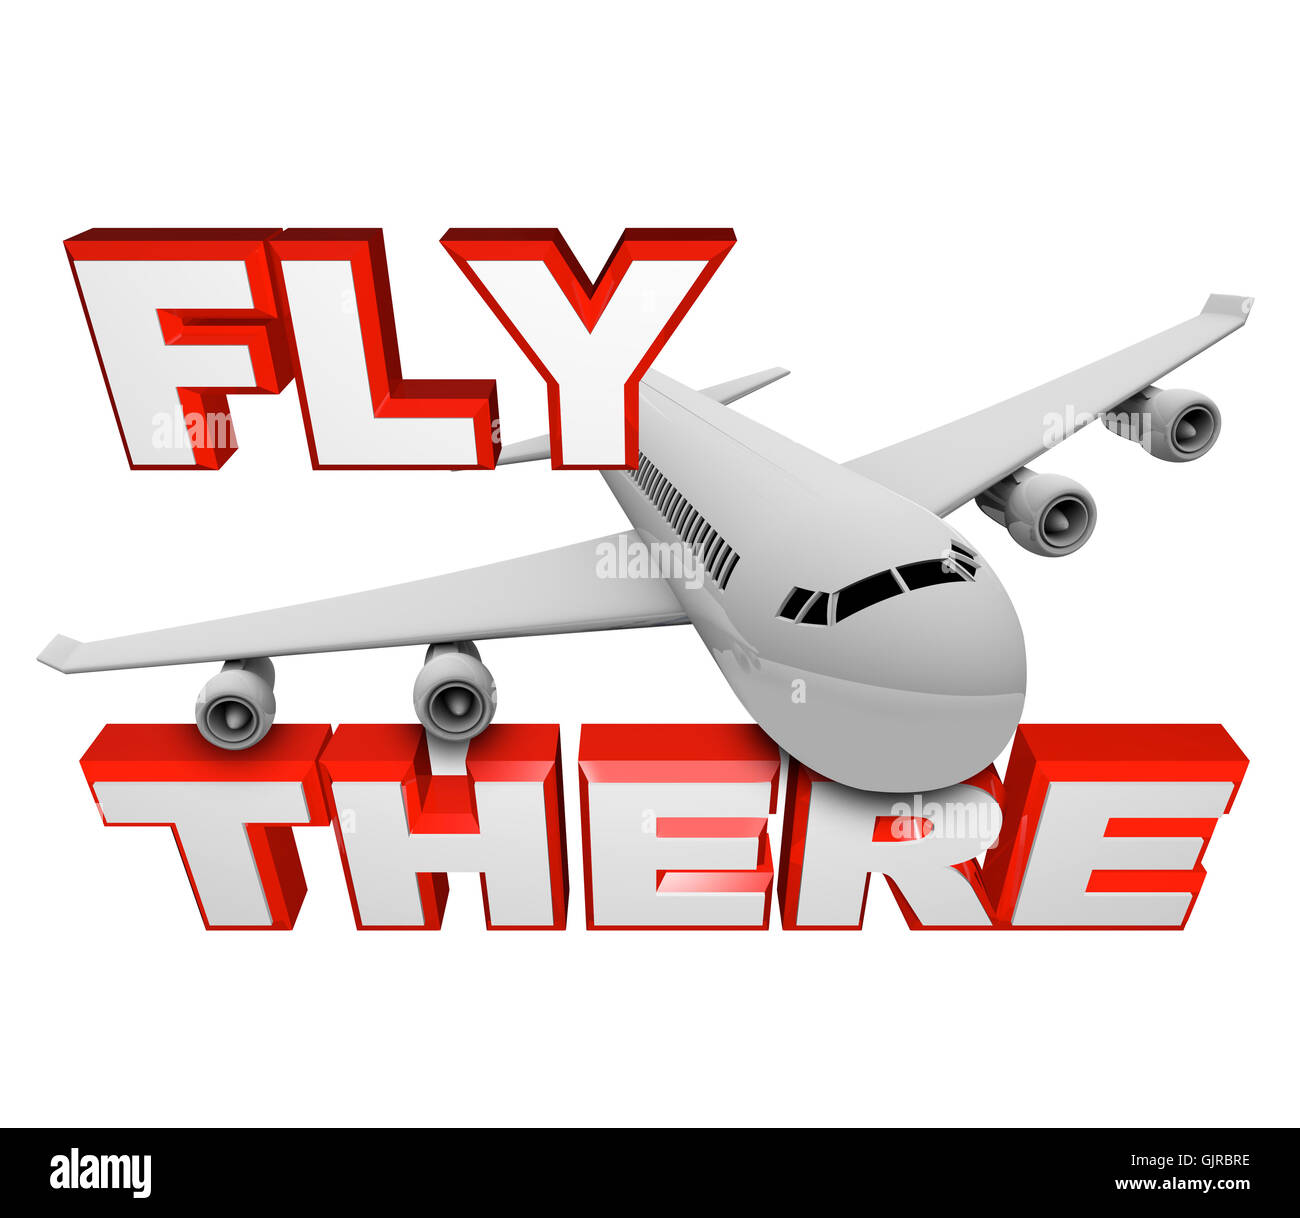 Volar allí - Avión y viajes palabras Foto de stock